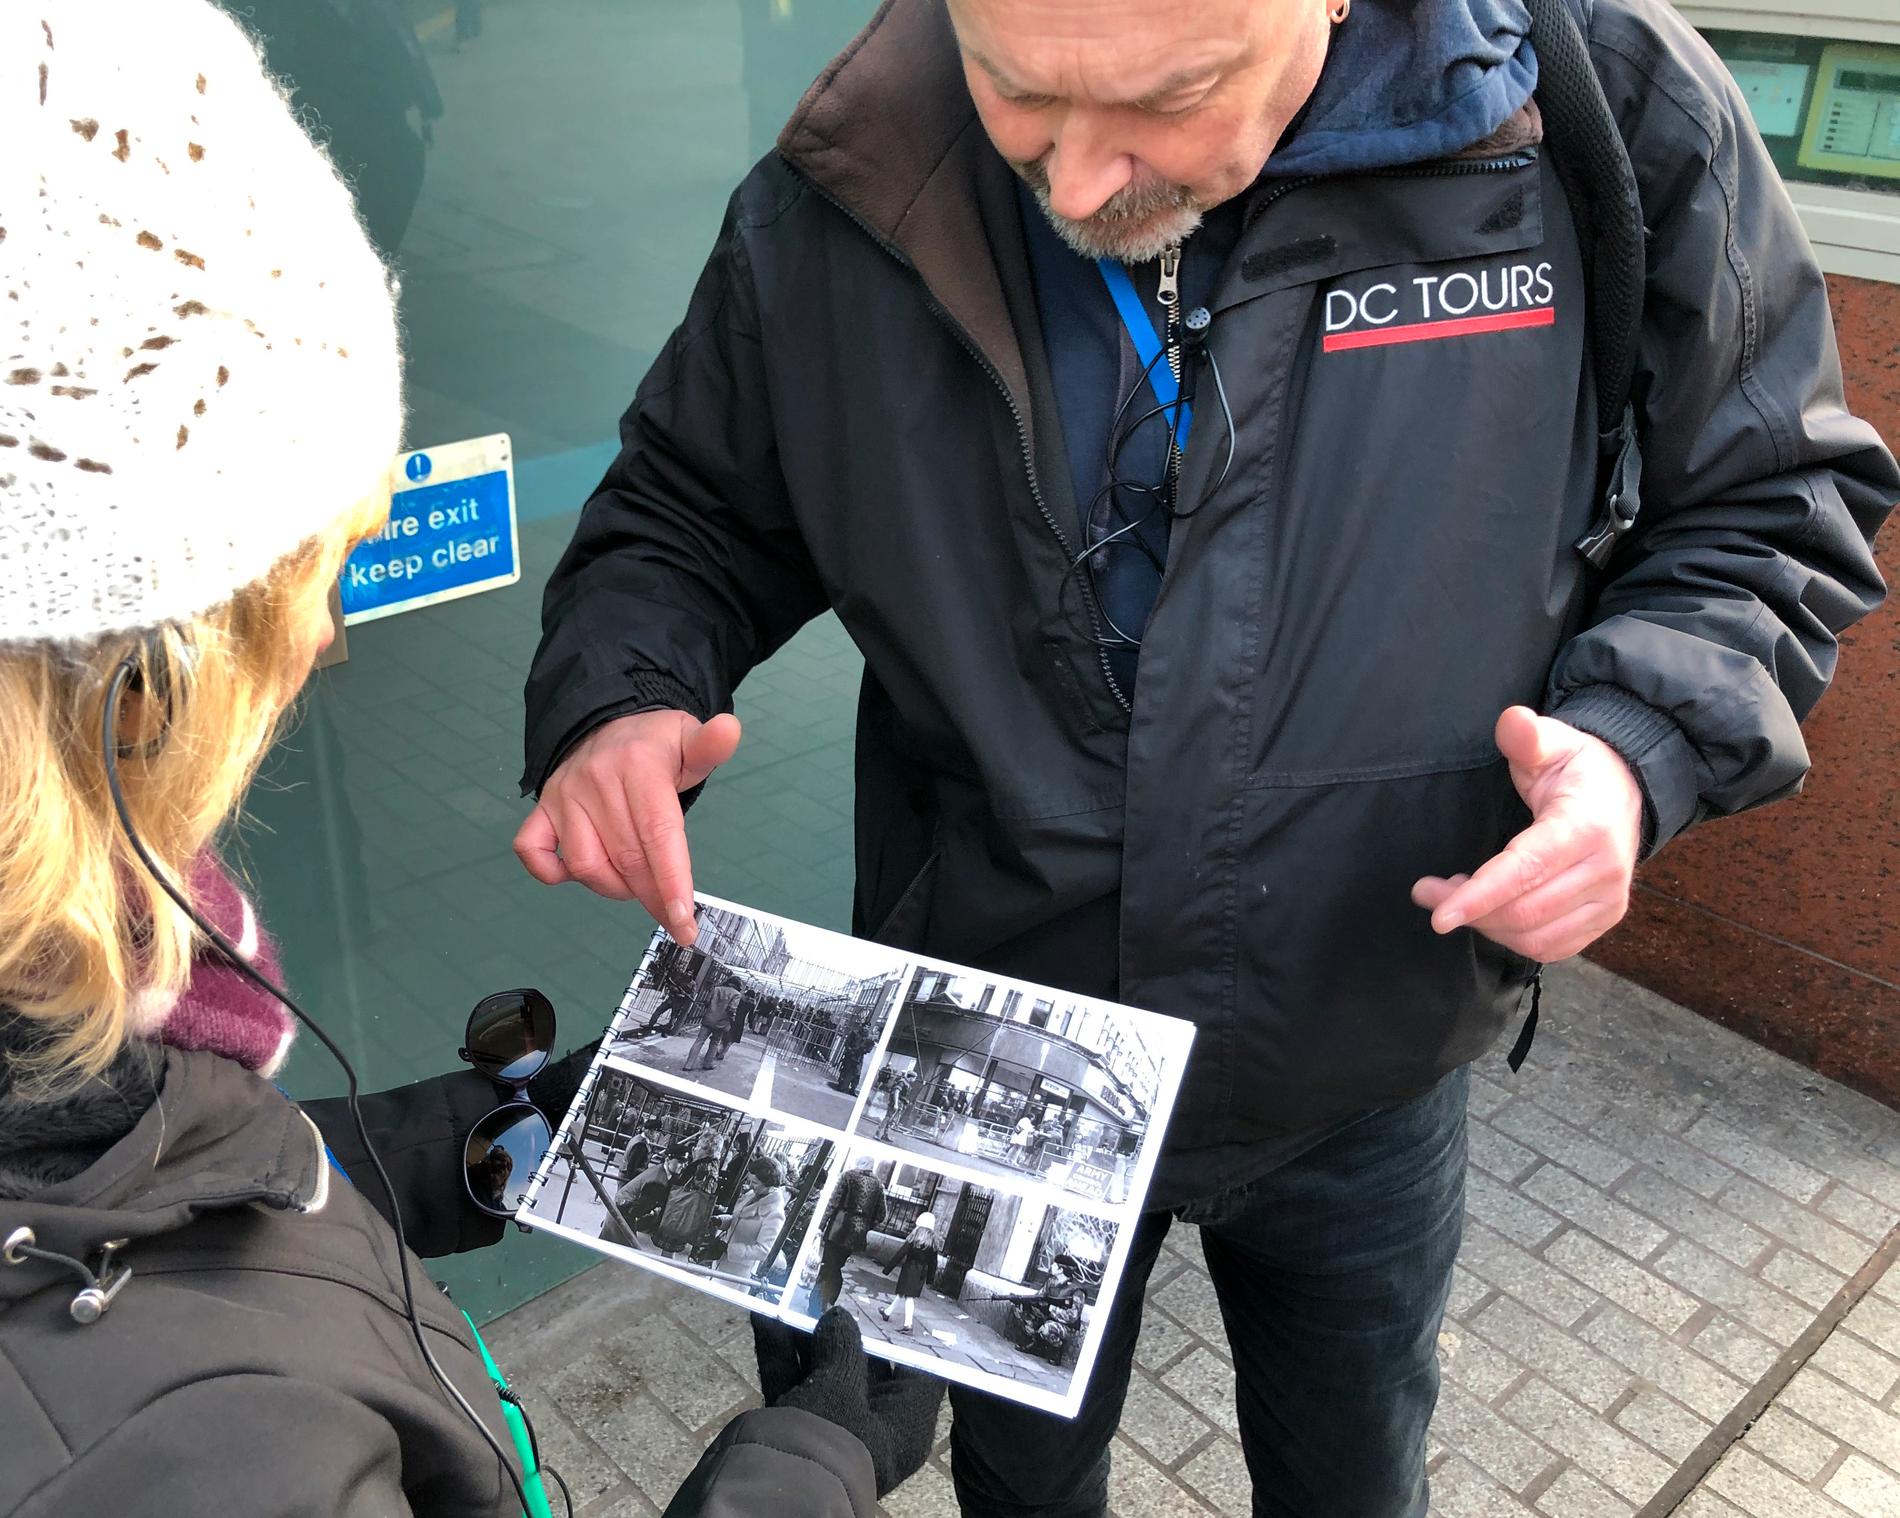 Turistguiden Paul Donnelly visar bilder på offer och bombdåd från de värsta orosåren under 1970- och 80-talen.